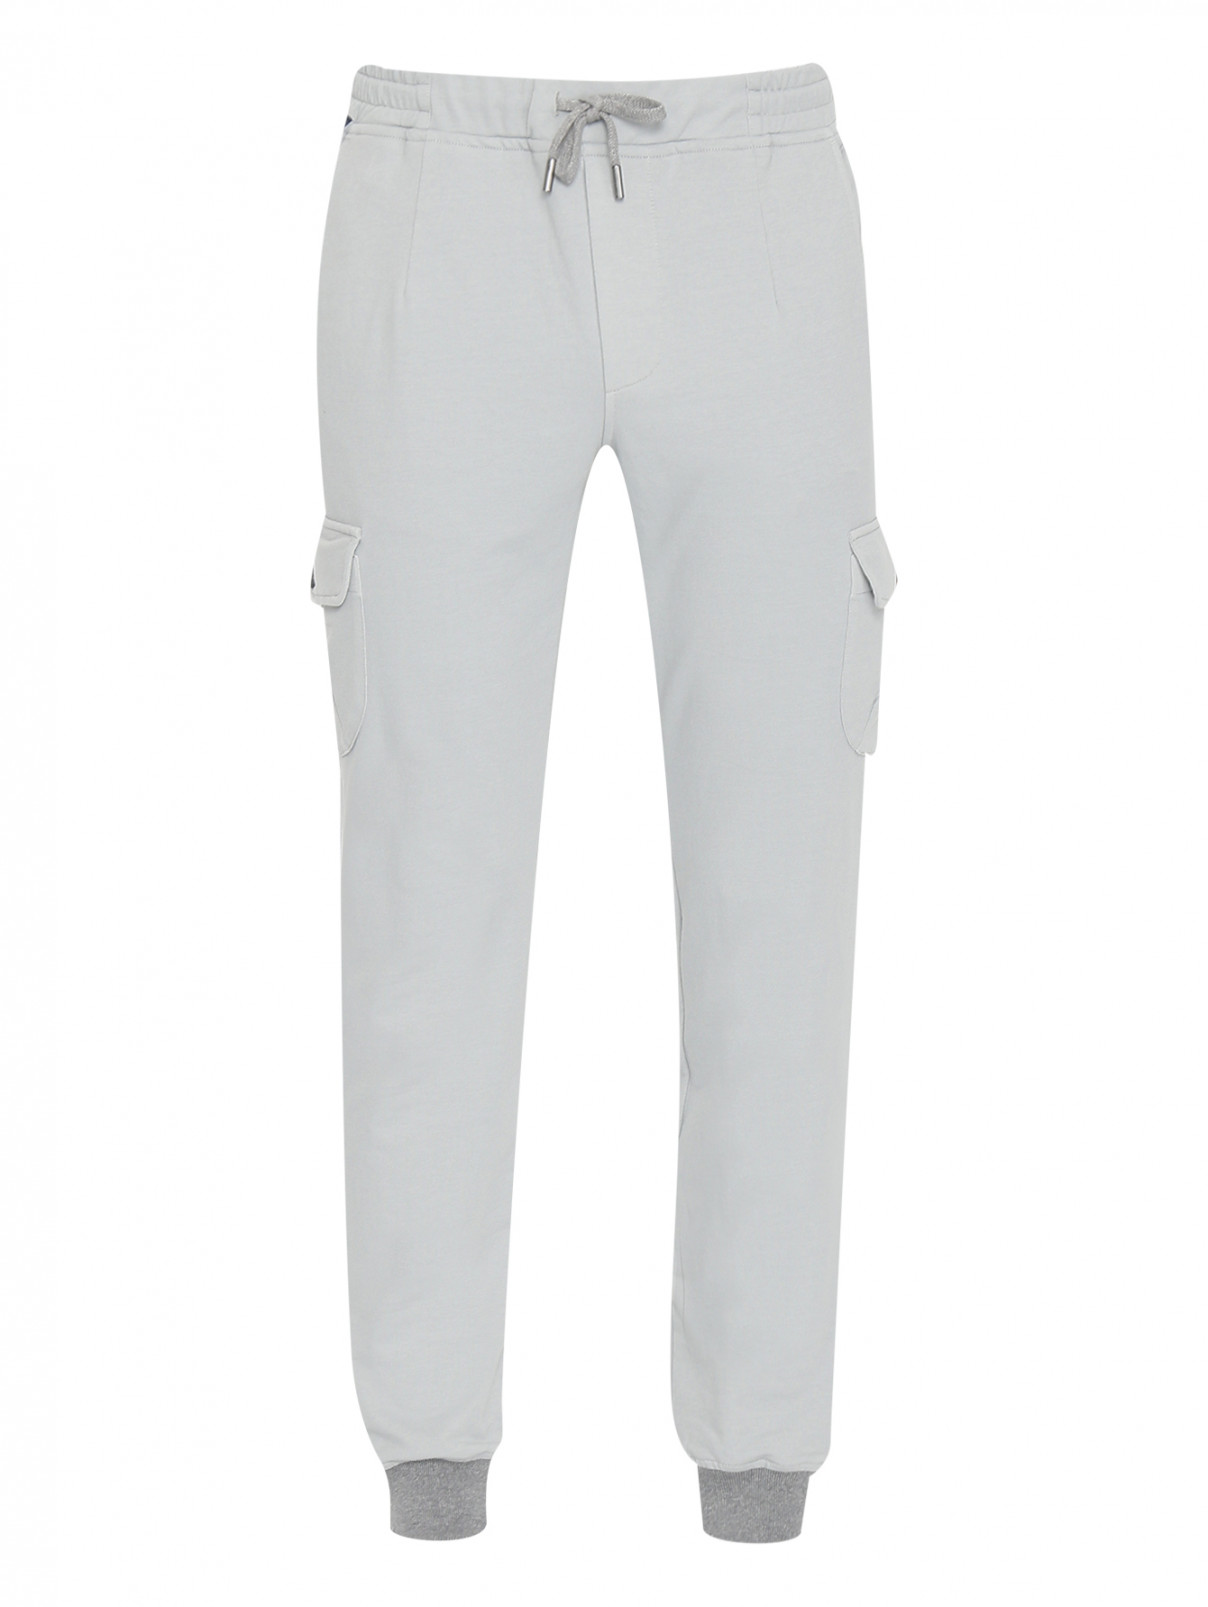 Трикотажные брюки из хлопка с карманами Capobianco  –  Общий вид  – Цвет:  Серый